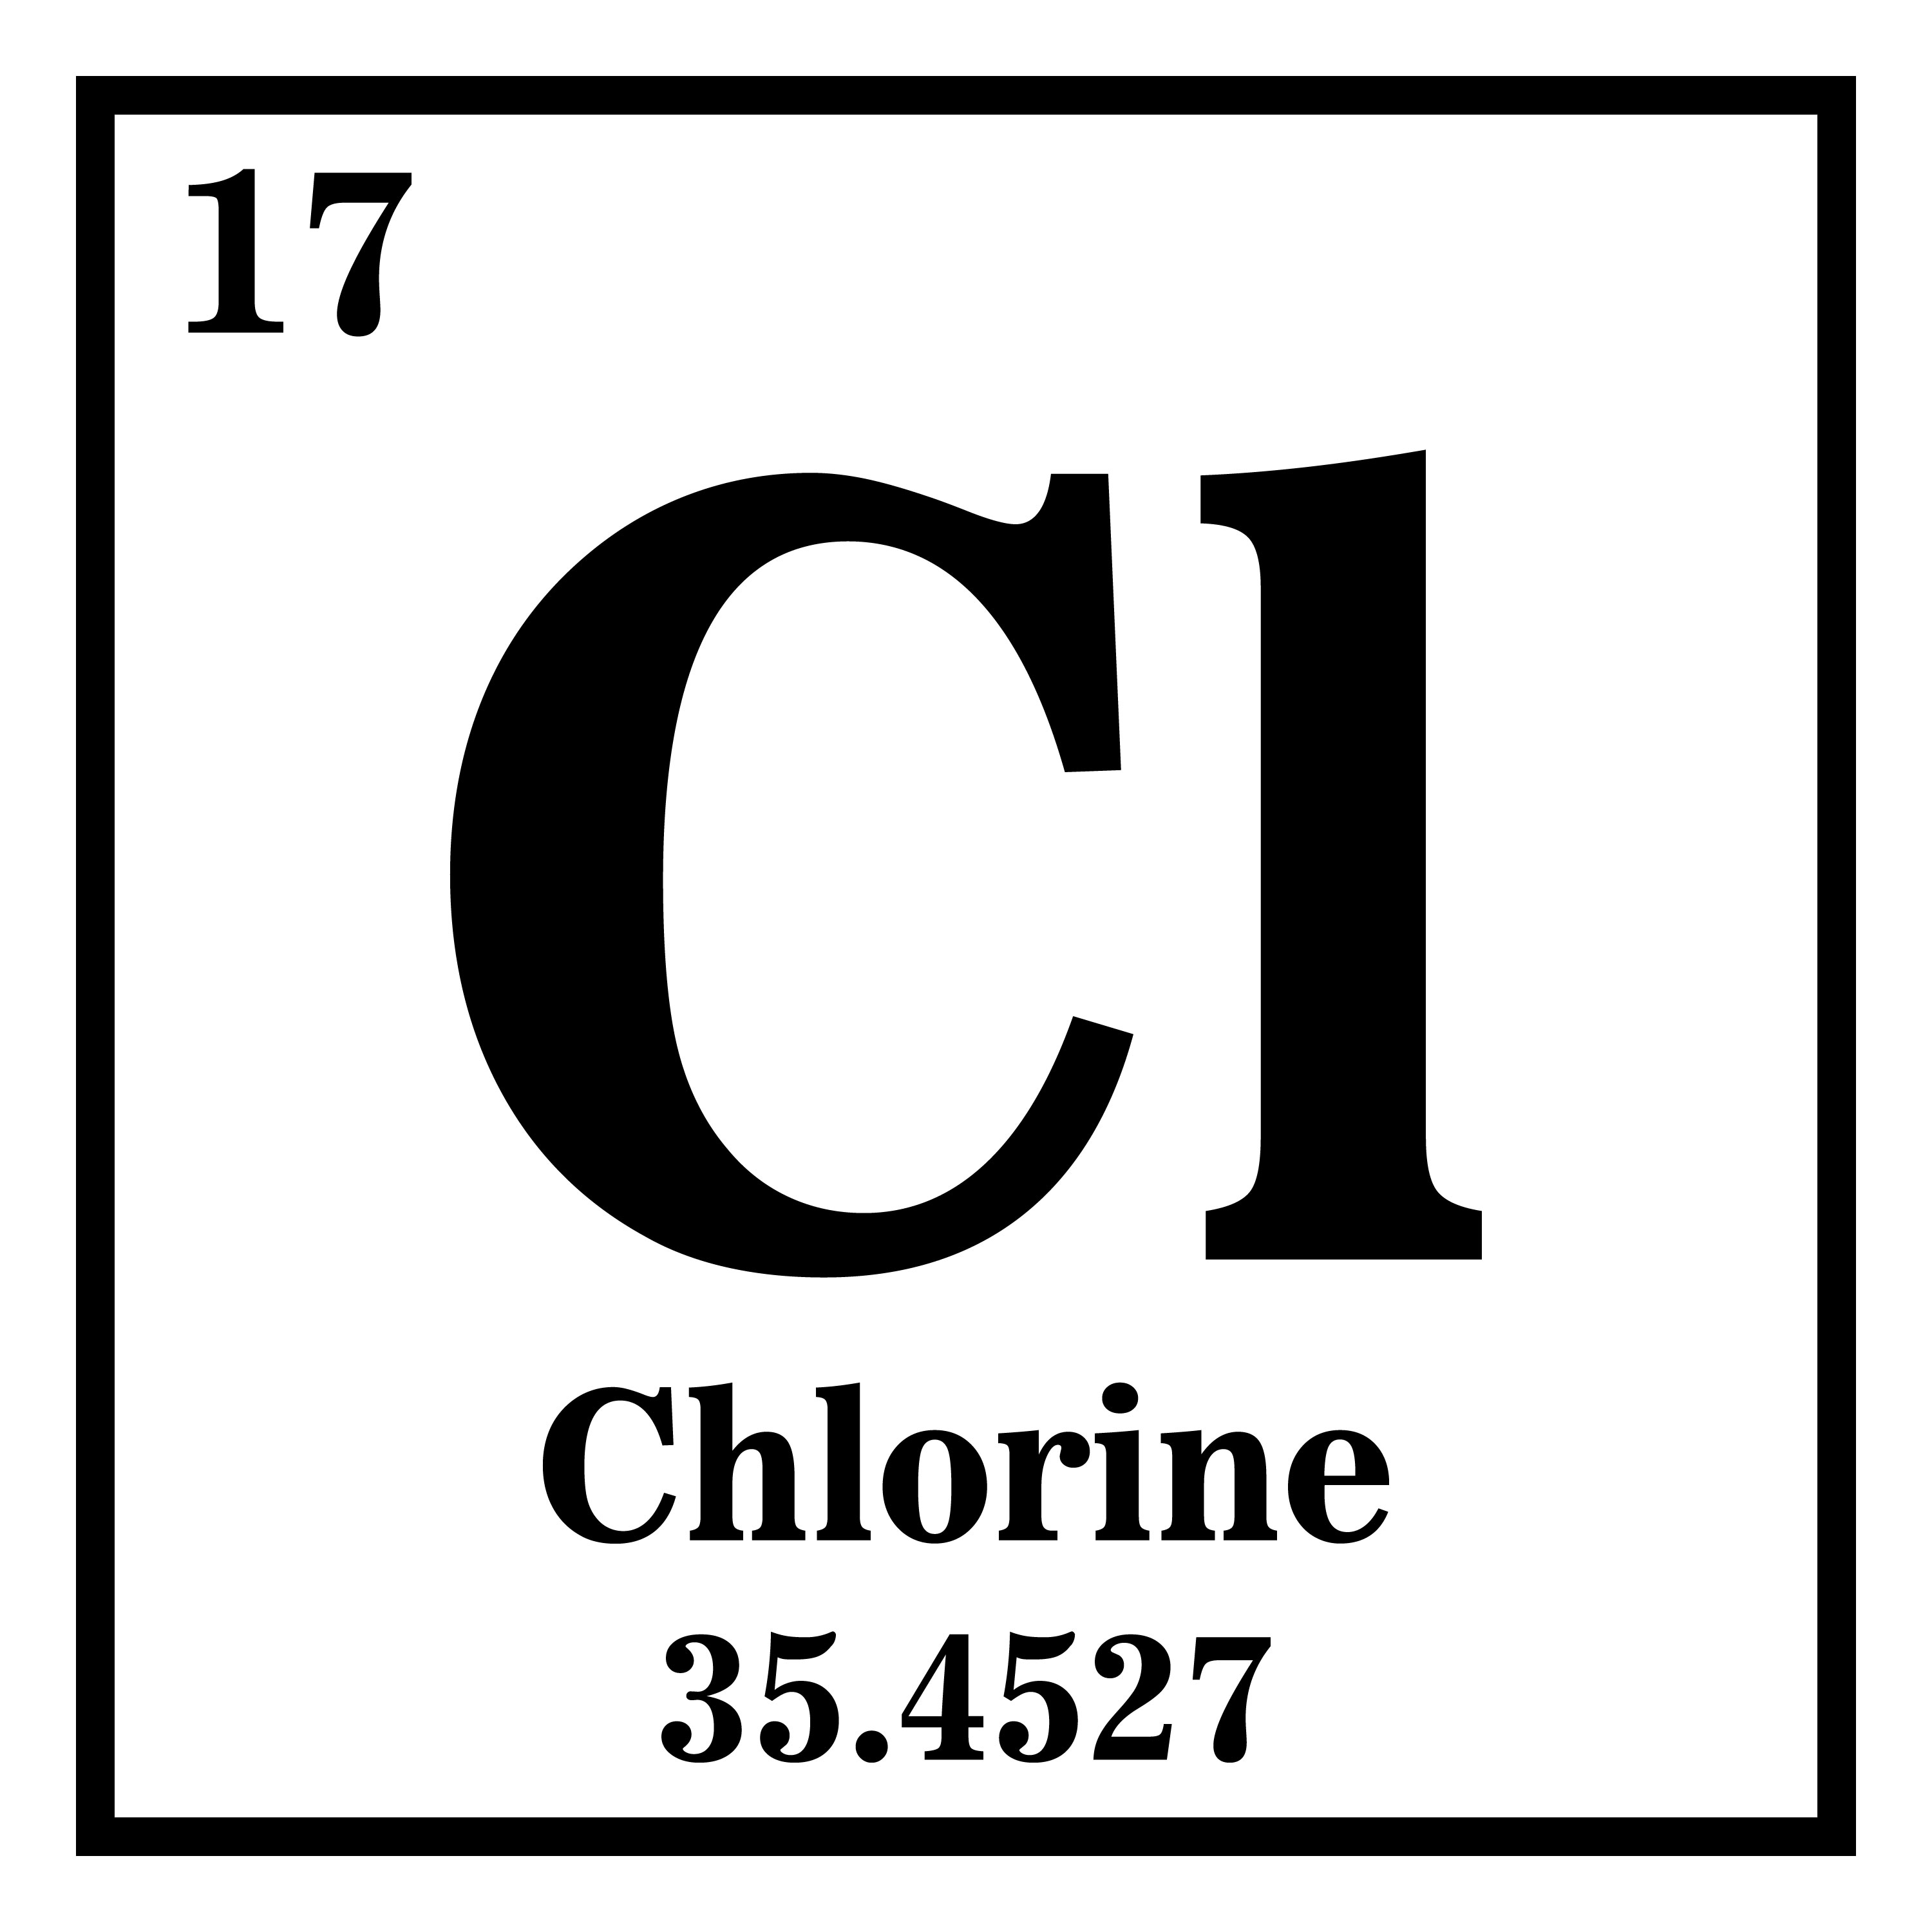 chlorine symbol